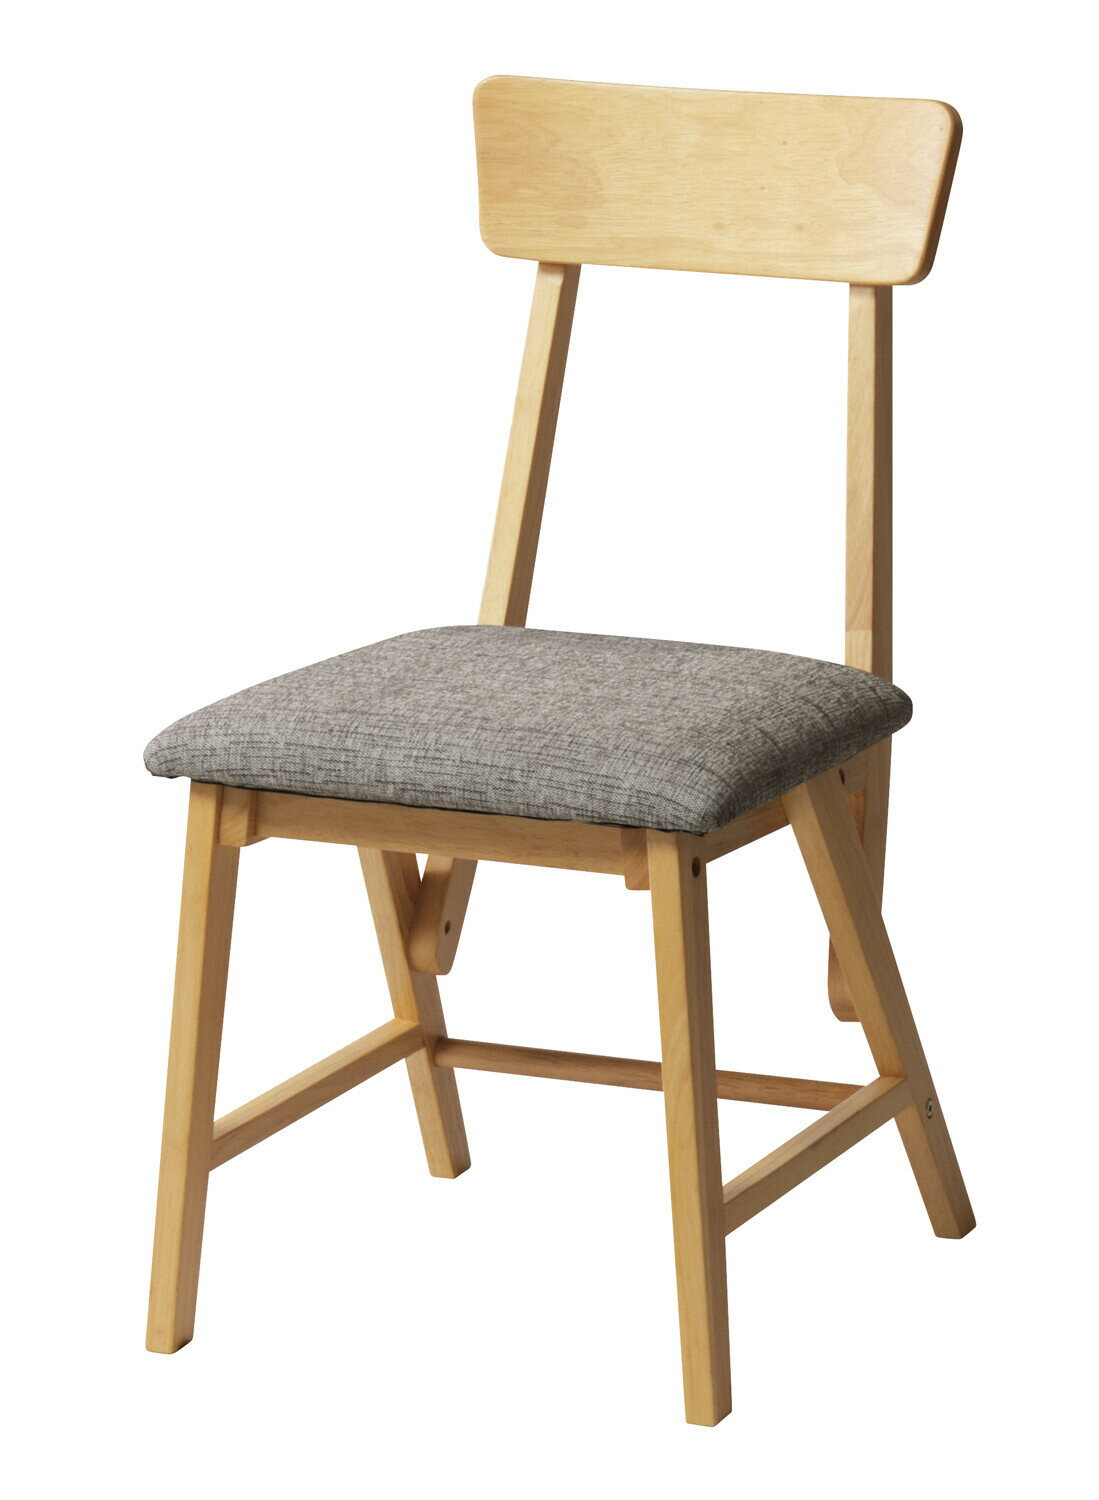 ライラ チェア ダイニングチェアー 木製 おしゃれ かわいい アンティーク クラシック 食卓椅子 デスクチェア 1脚 椅子 イス いす 在宅ワーク リモートワーク テレワーク